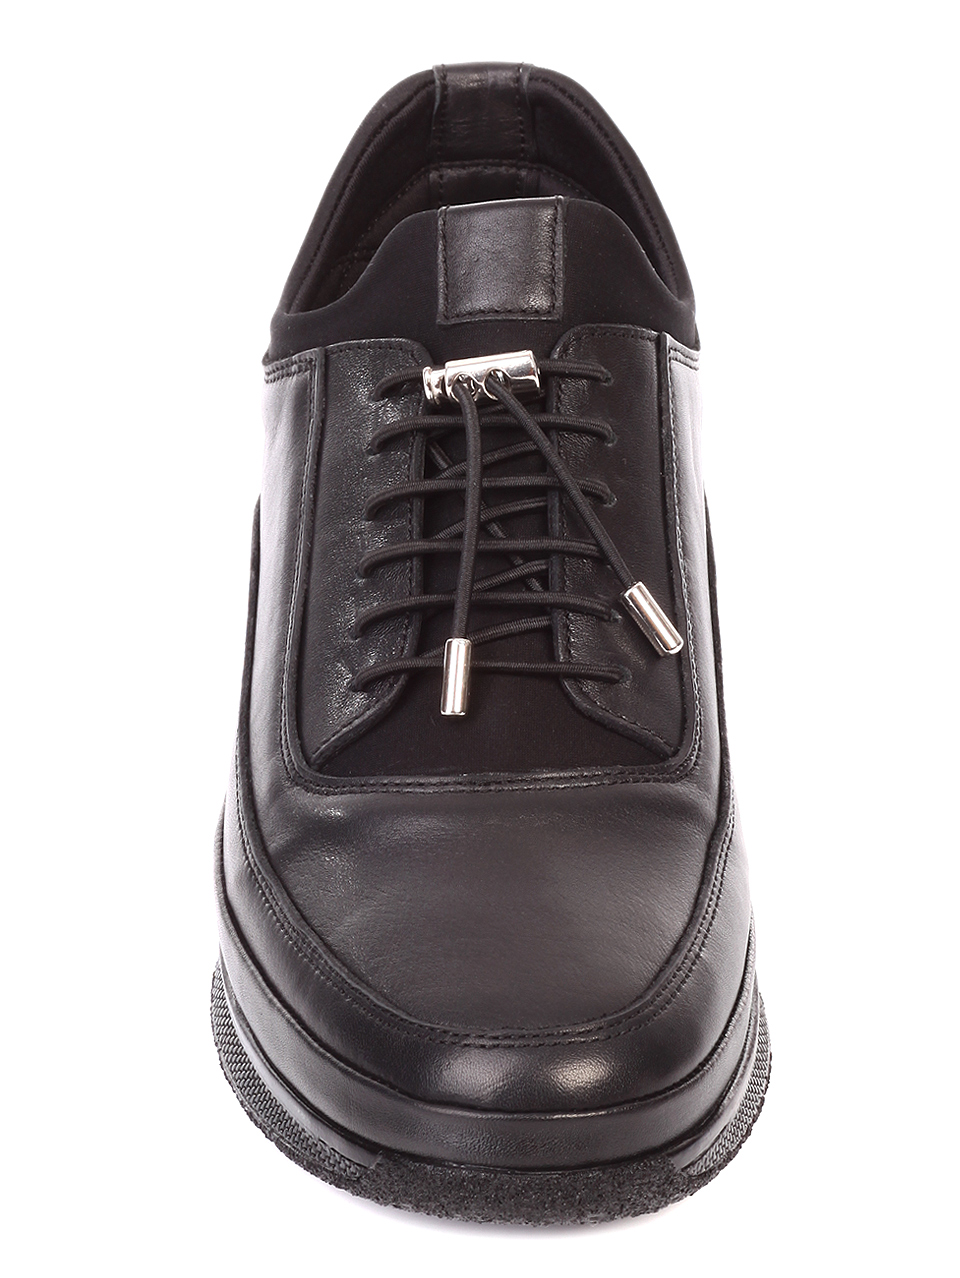 Ежедневни мъжки обувки от естествена кожа 7AT-19912 black